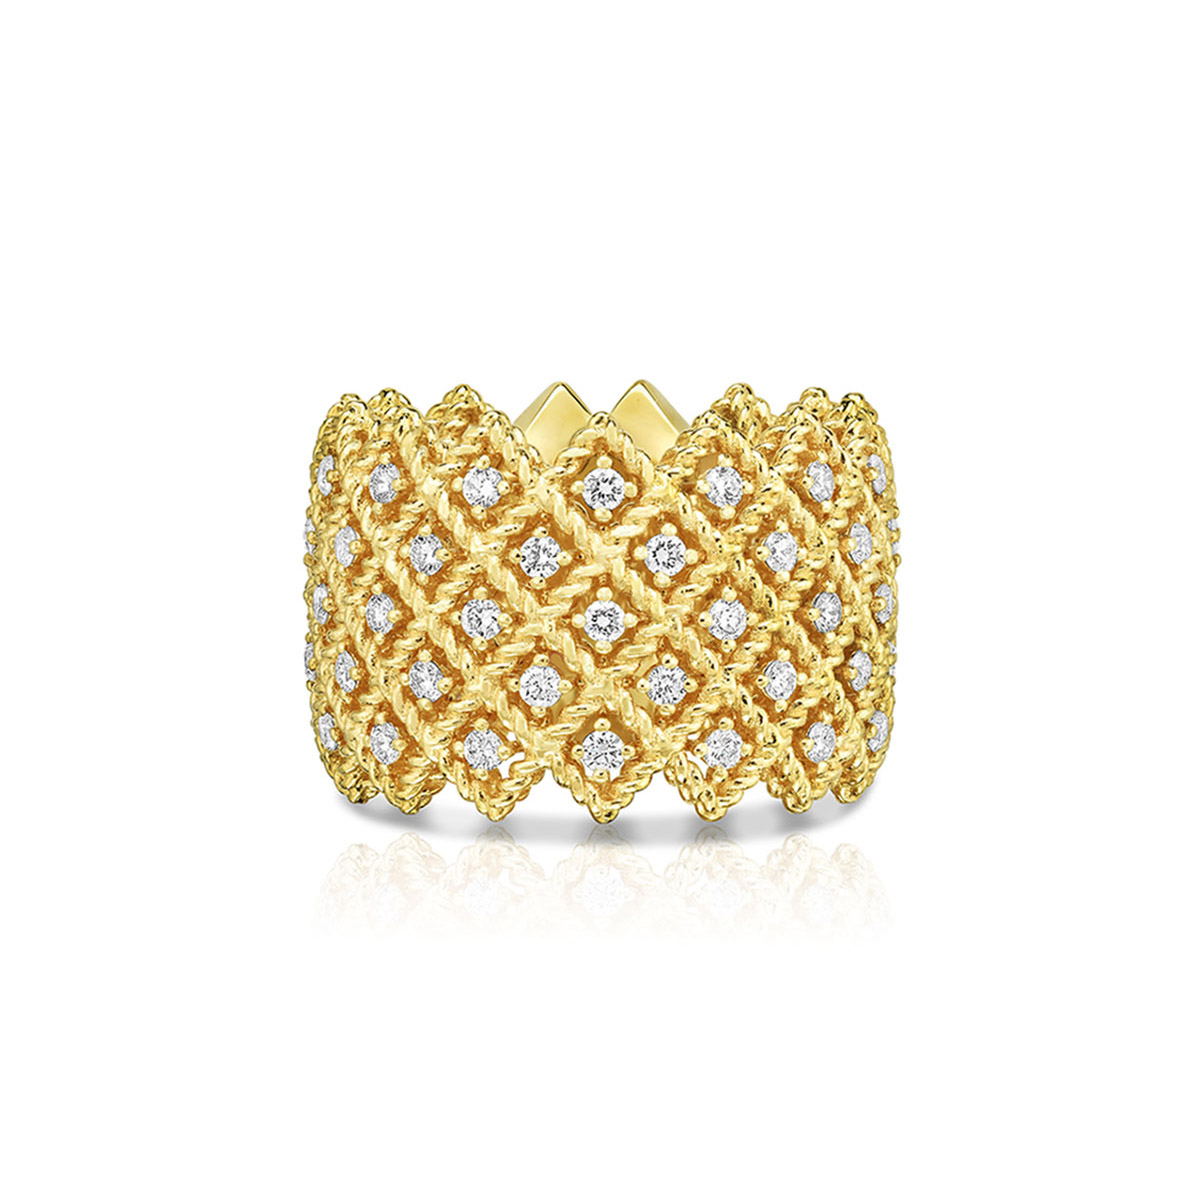 Venta al por mayor que ofrece el anillo personalizado de cinco filas de joyería OEM/ODM con diamantes en joyería de diseño de oro amarillo de 18 quilates